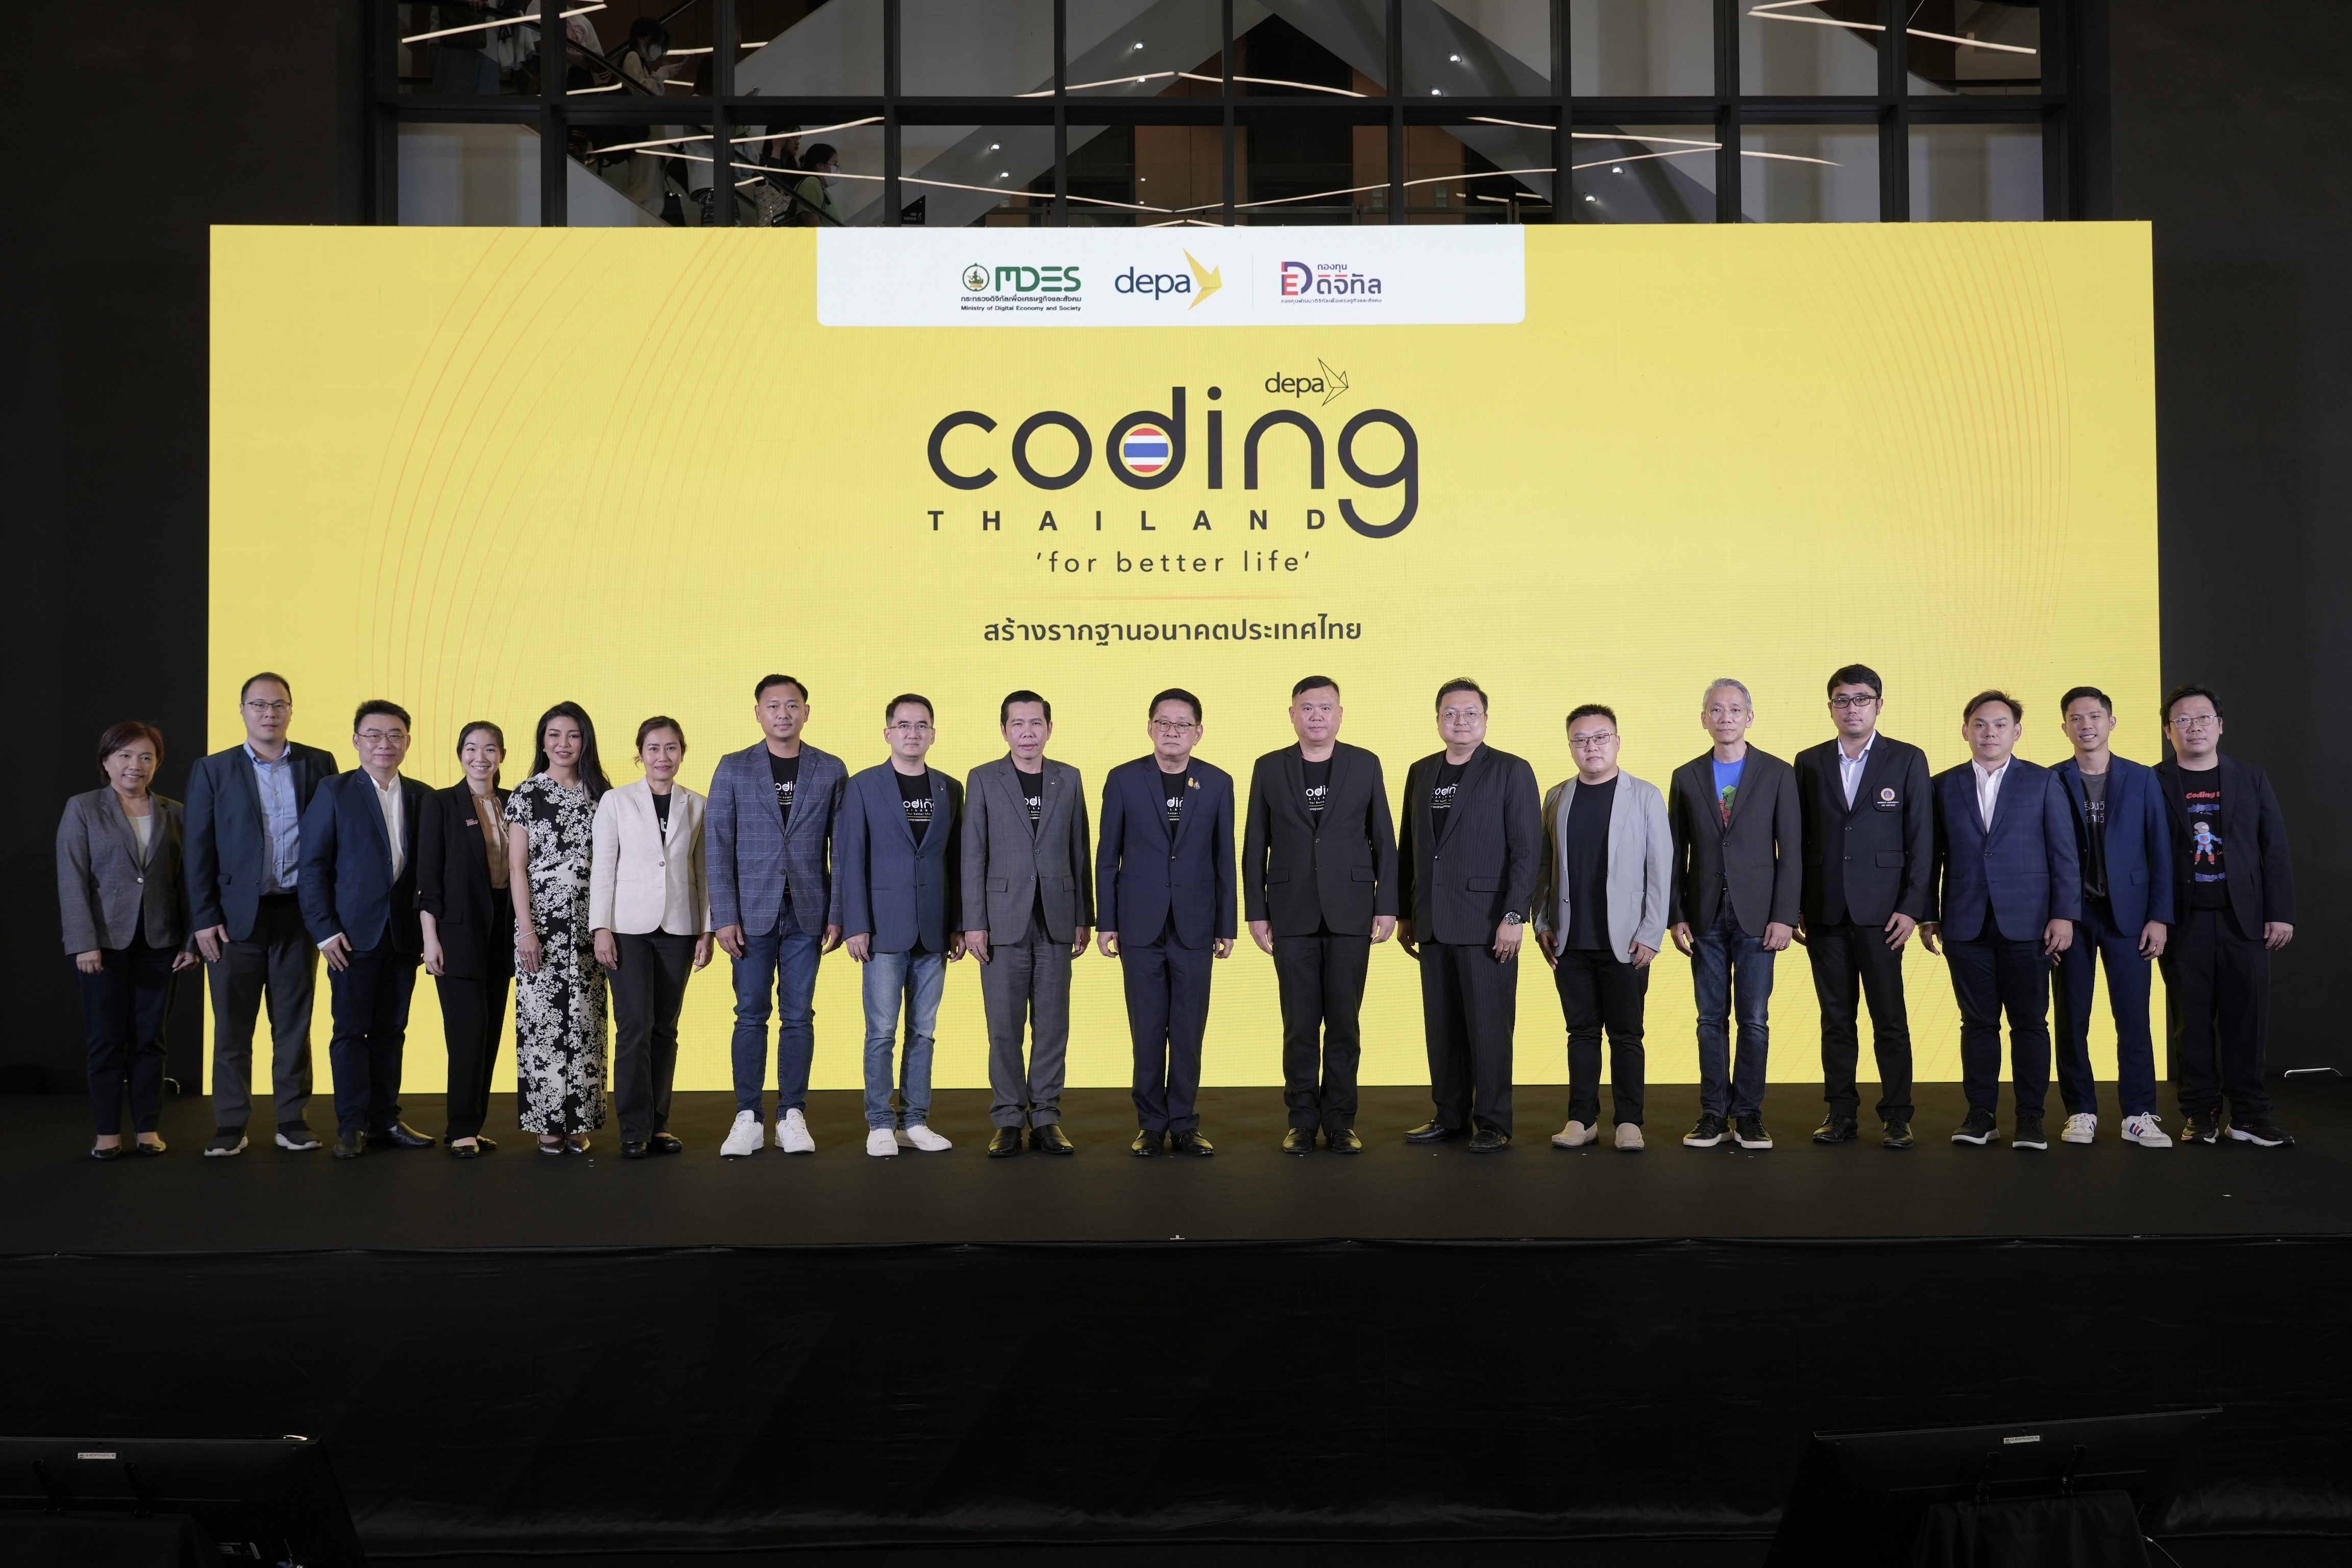 กระทรวงดีอี โดย ดีป้า เดินหน้าโครงการ Coding for Better Life รากฐานอนาคตประเทศไทย